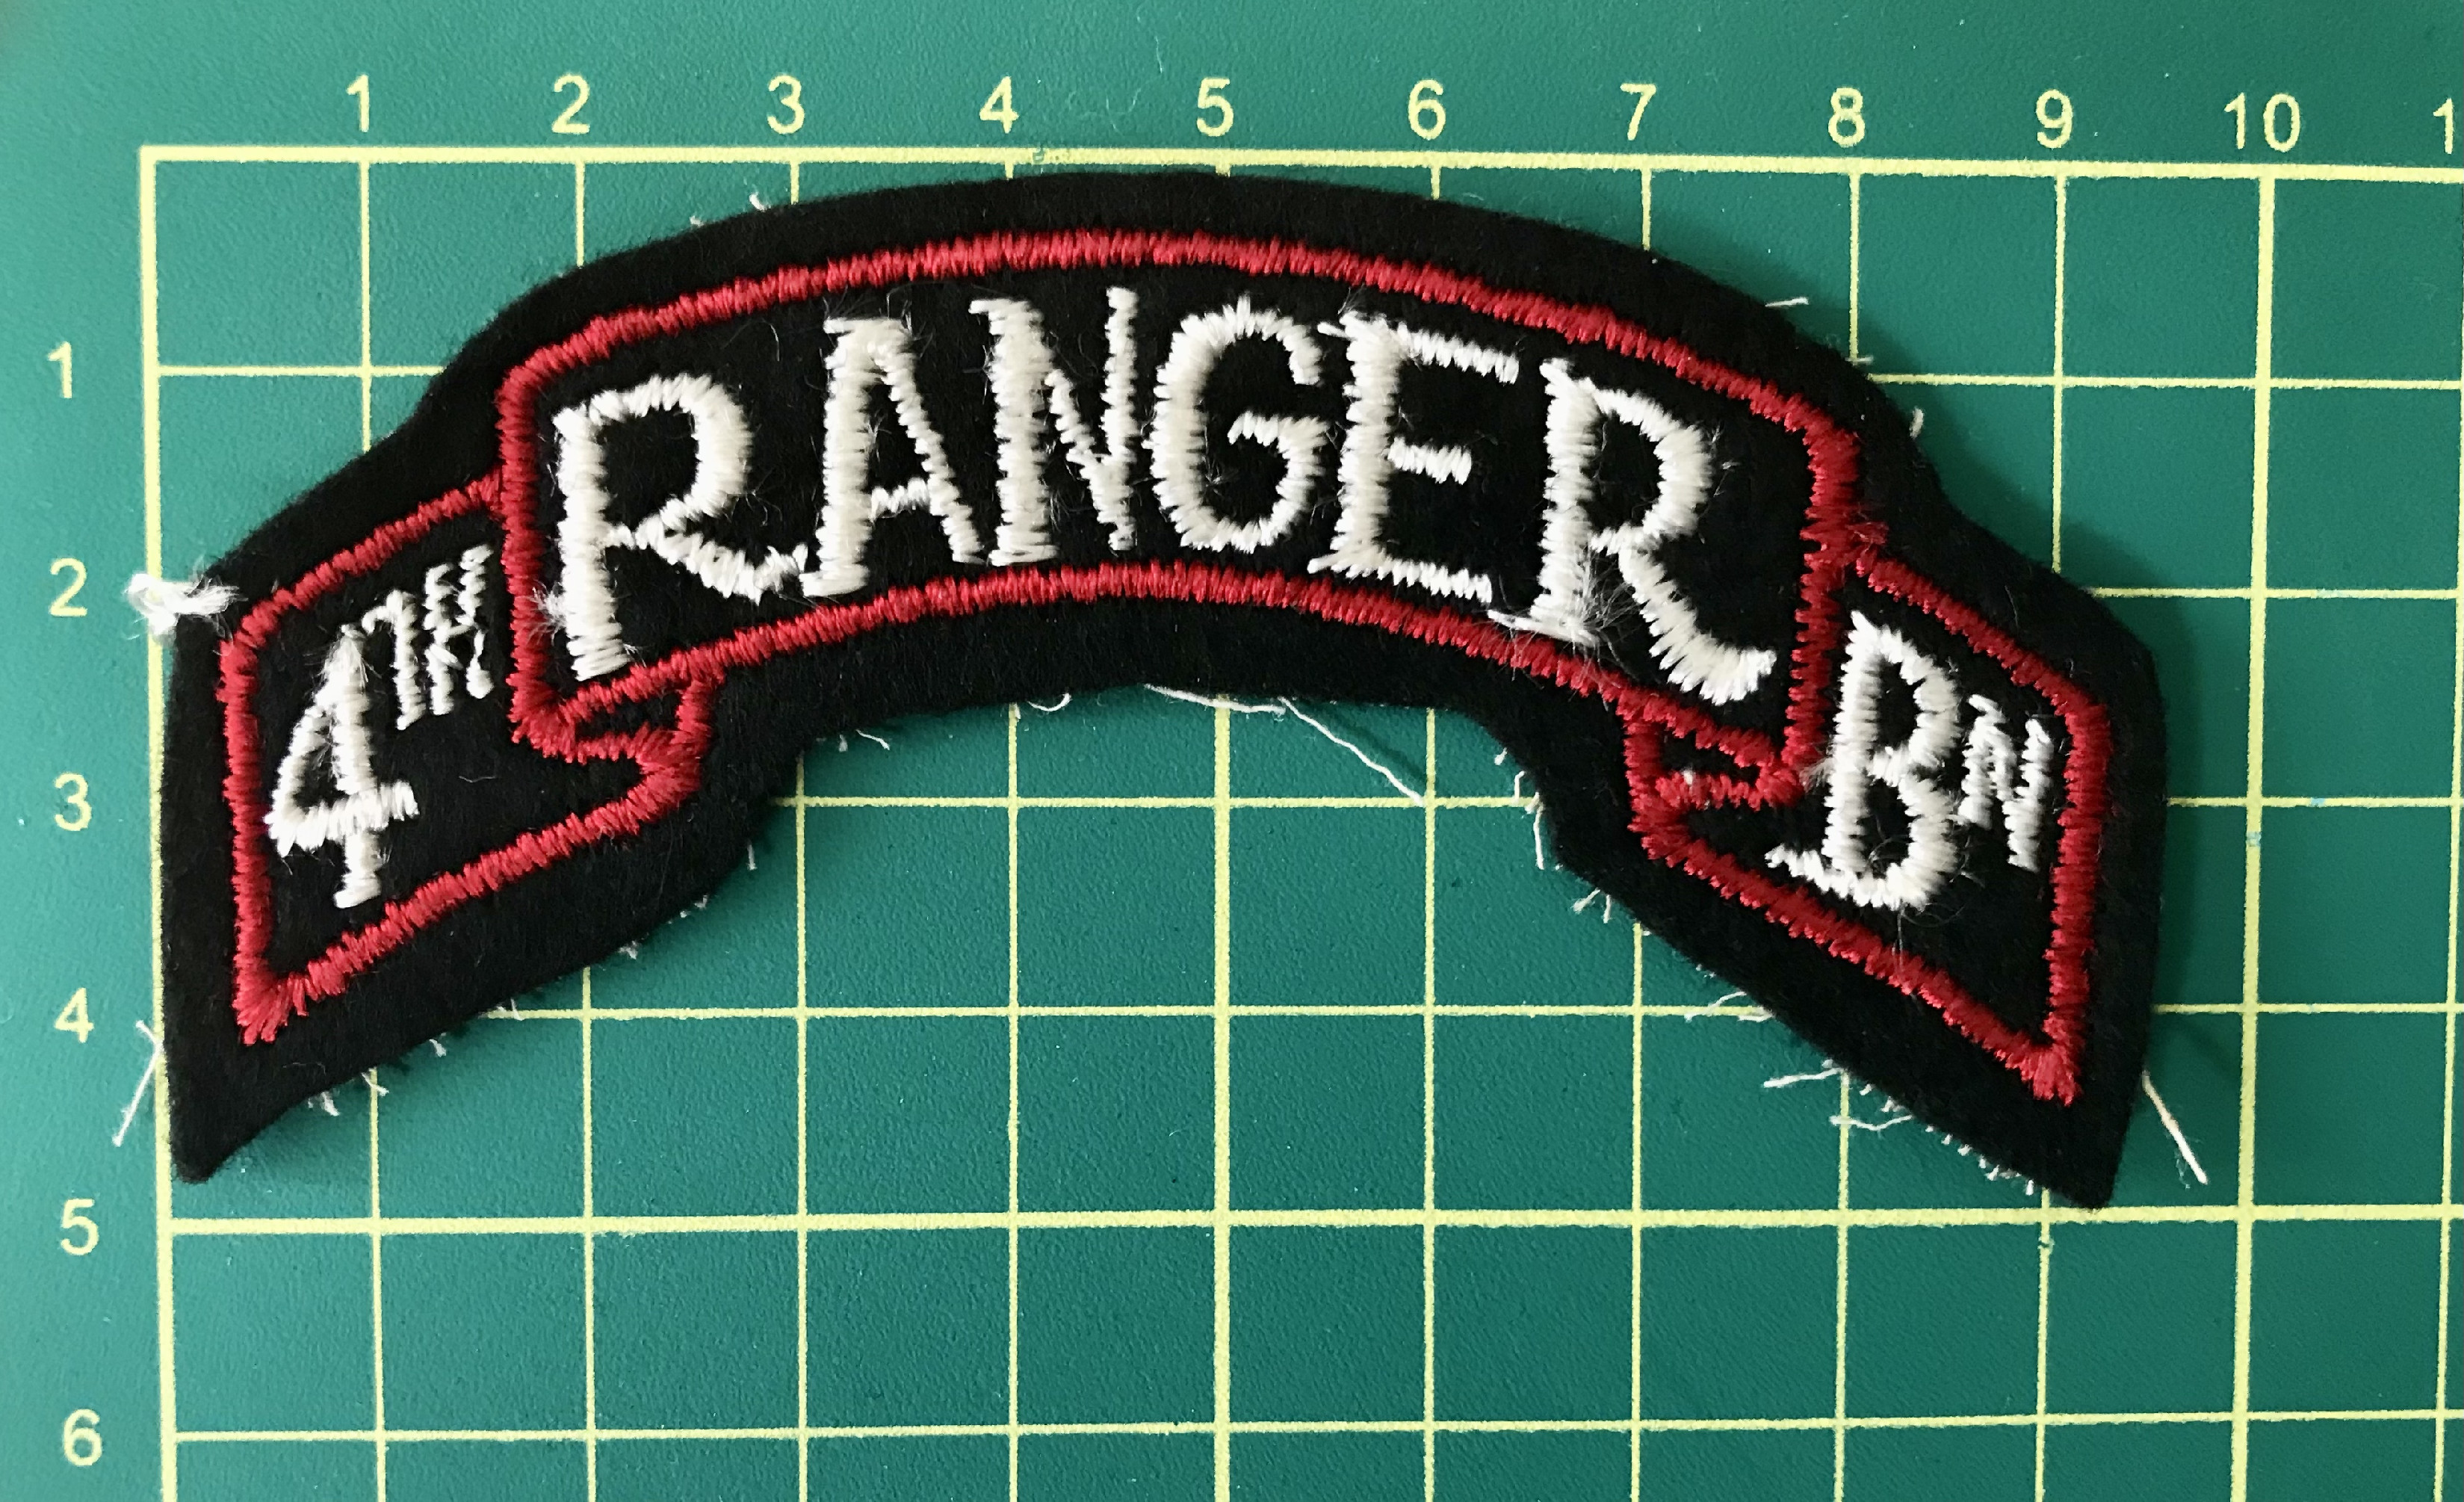 Oblouček 4th Ranger Bn.